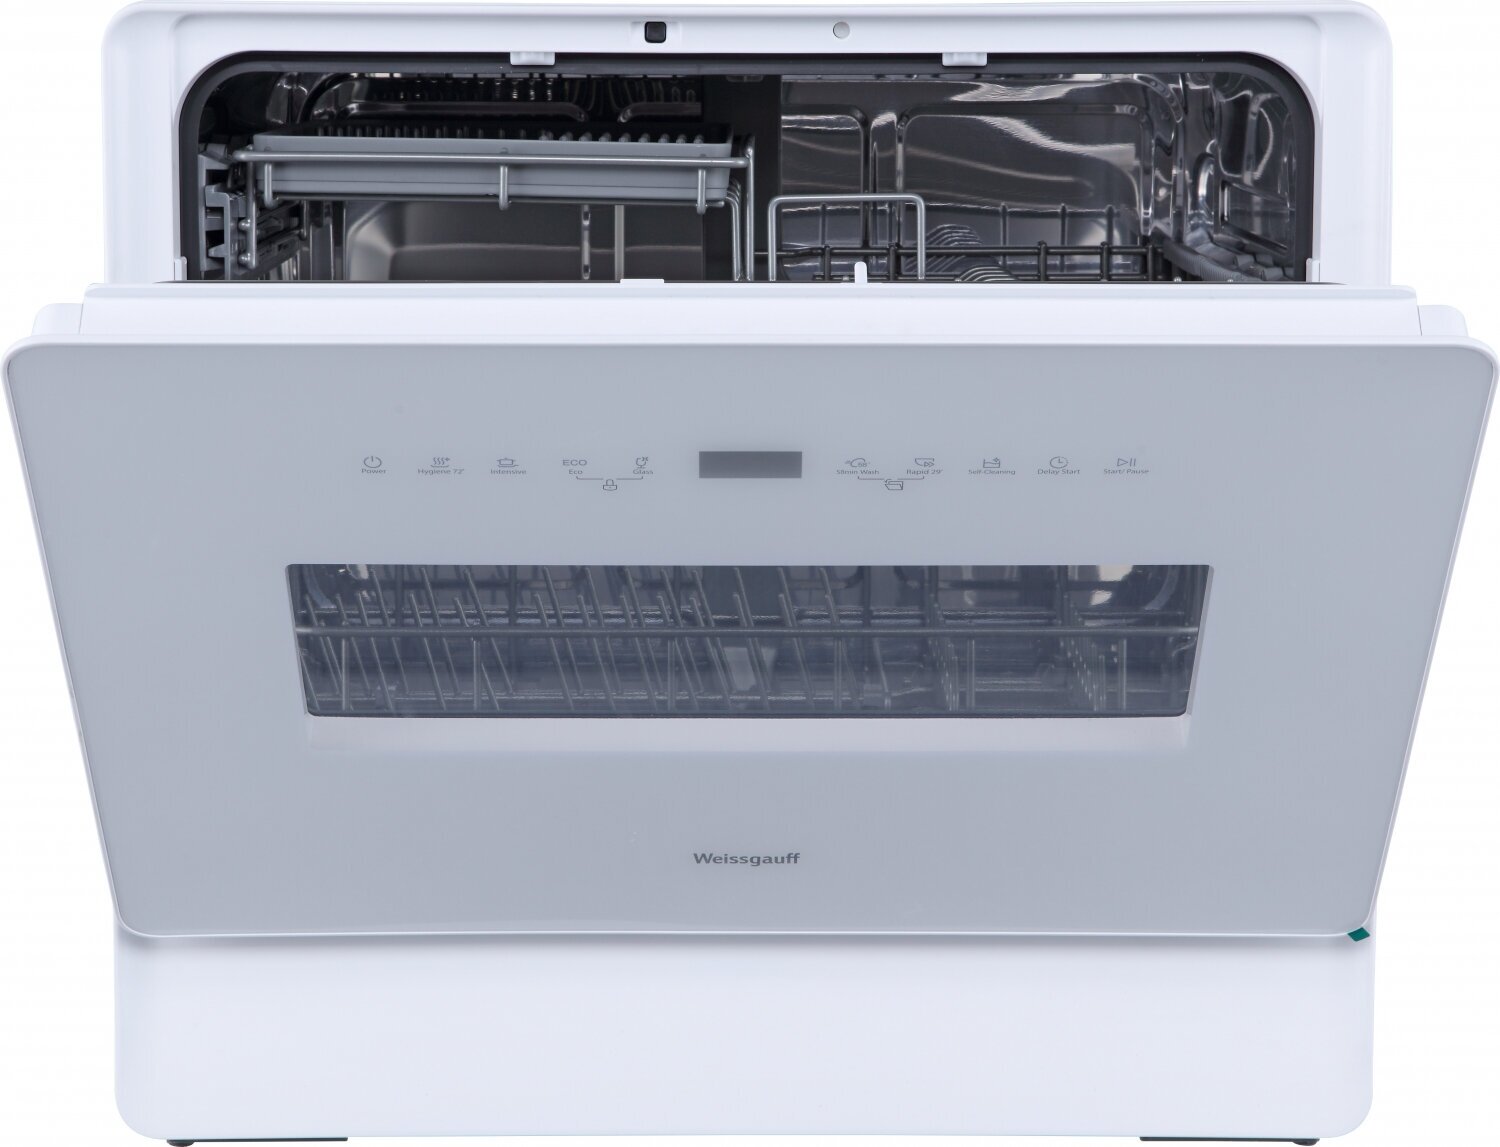 Настольная посудомоечная машина с авто-открыванием Weissgauff TDW 5035 D Slim,3 года гарантии, 5 комплектов посуды, 7 программ, быстрая, стерилизация, сенсорное управление, блокировка от детей, таймер